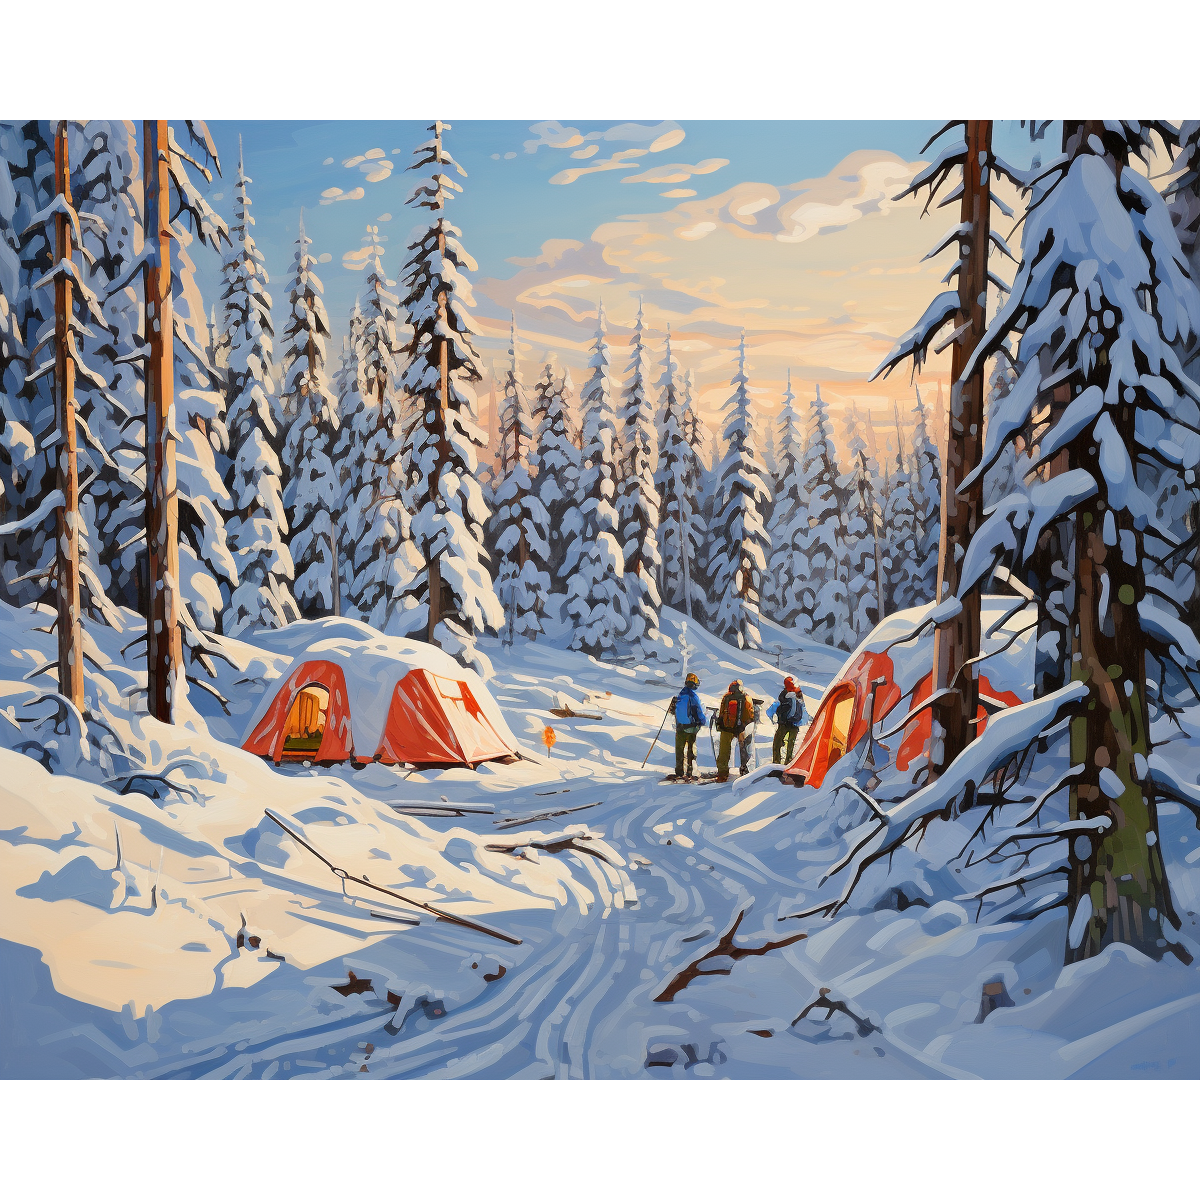 Camping Snowfall